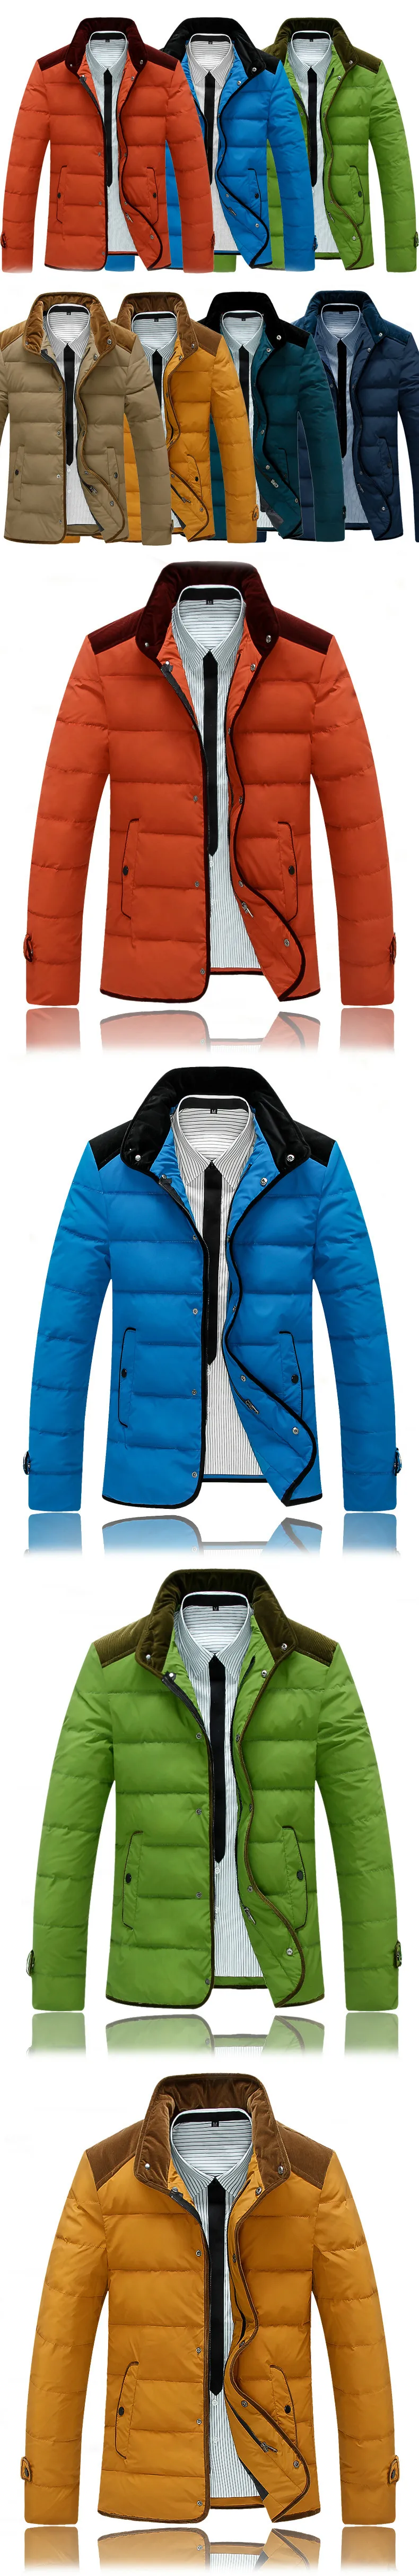 Зимняя мужская куртка от известного бренда, пуховая парка со стоячим воротником, пуховик, верхняя одежда, повседневная верхняя одежда, пальто